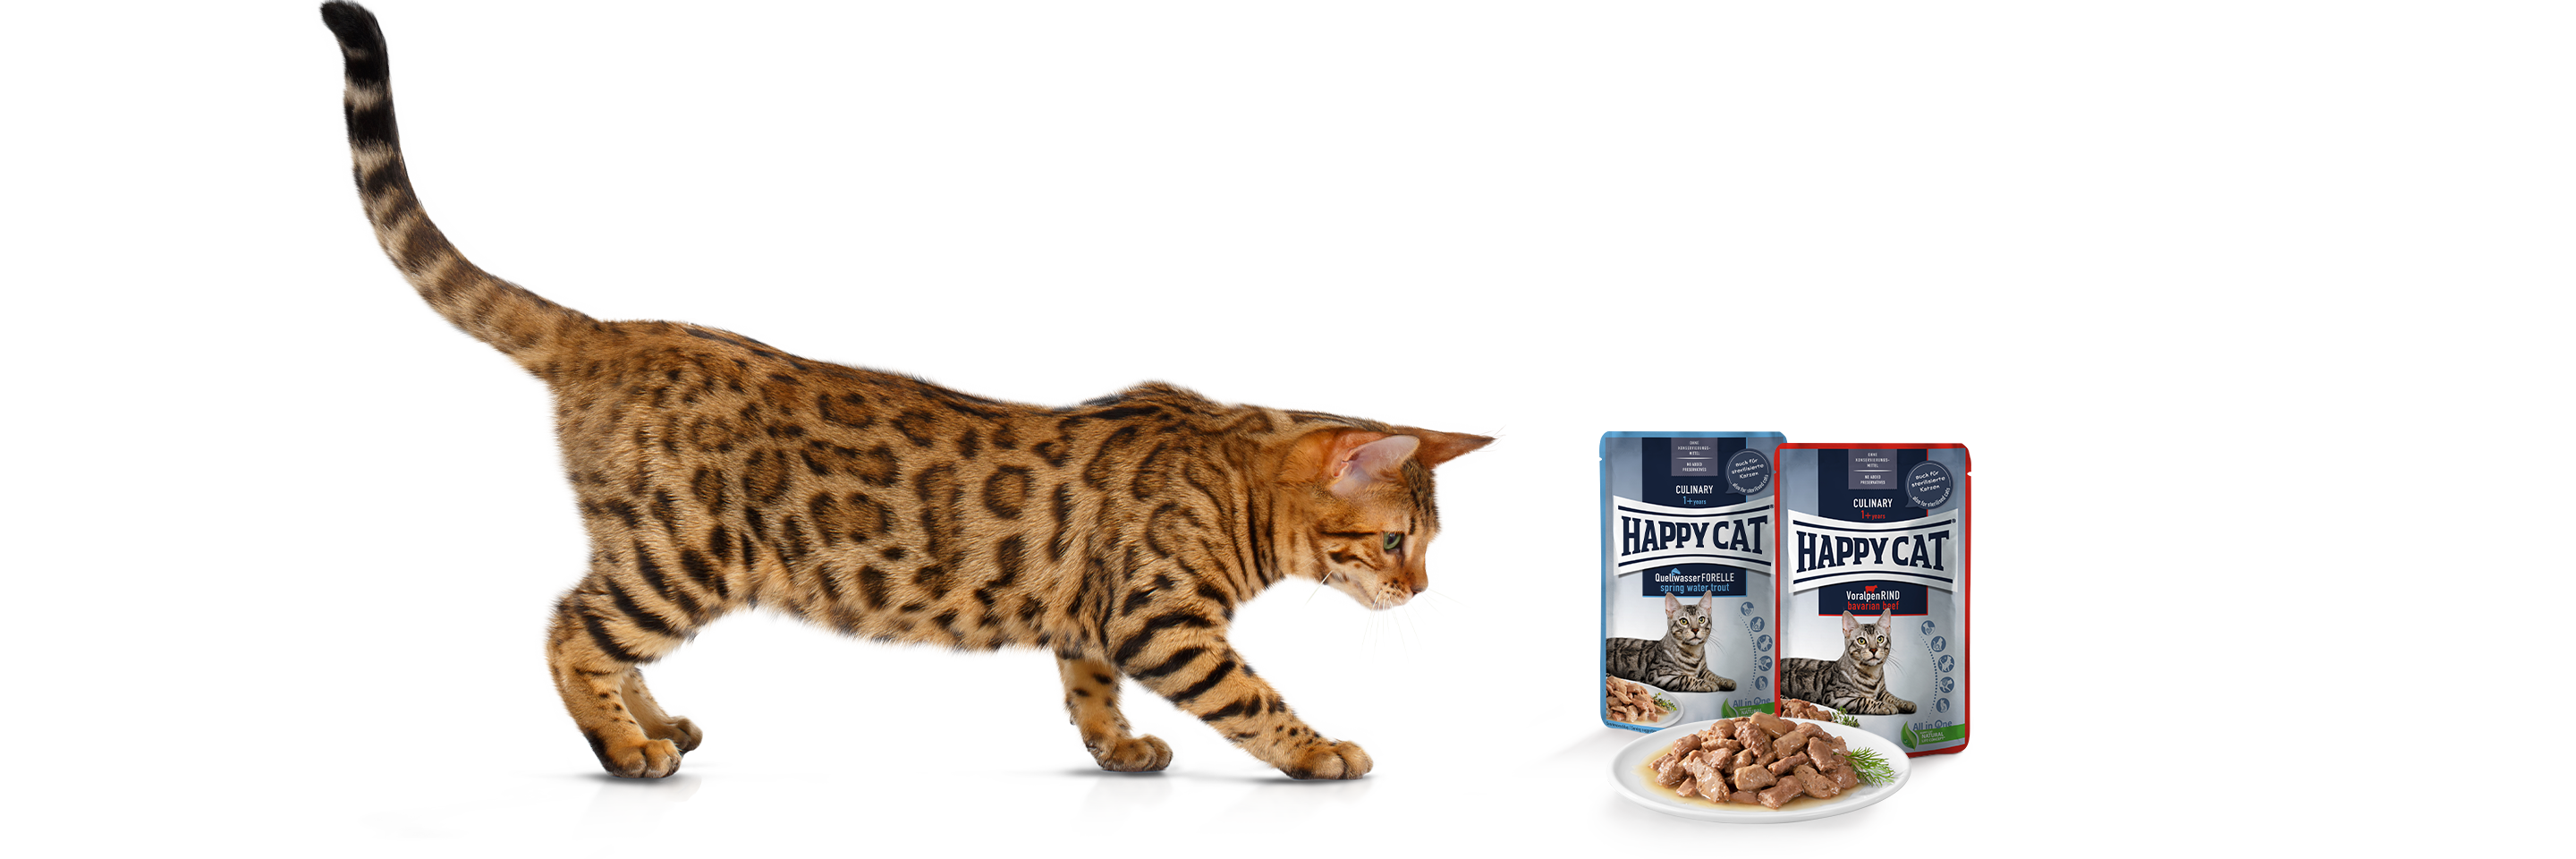 Bengalkatze nähert sich langsam einem Teller mit Happy Cat Meat in Sauce Nassfutter darauf